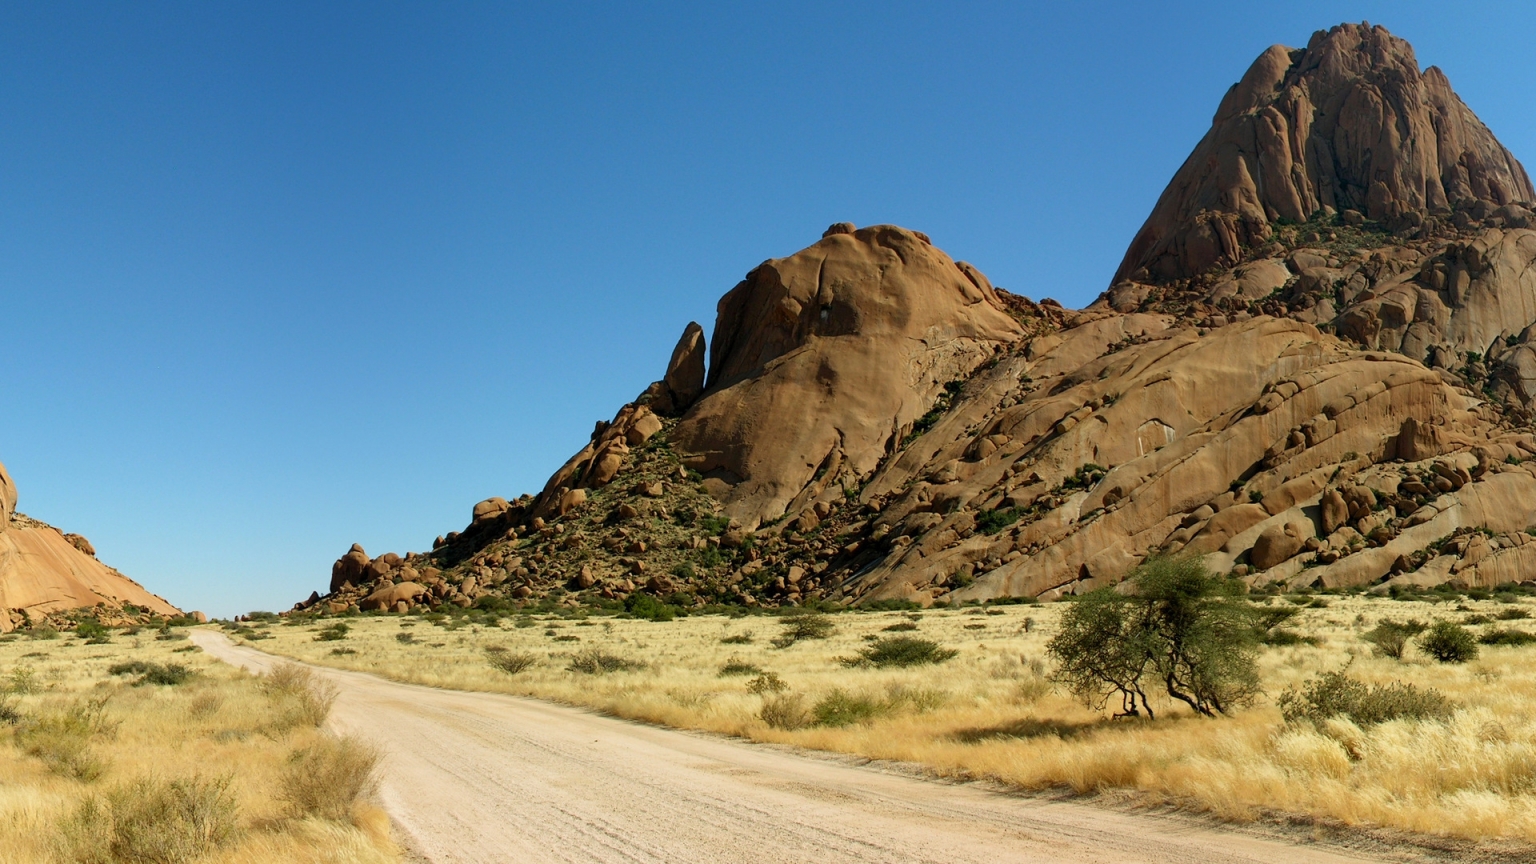 Road in Desert for 1536 x 864 HDTV resolution